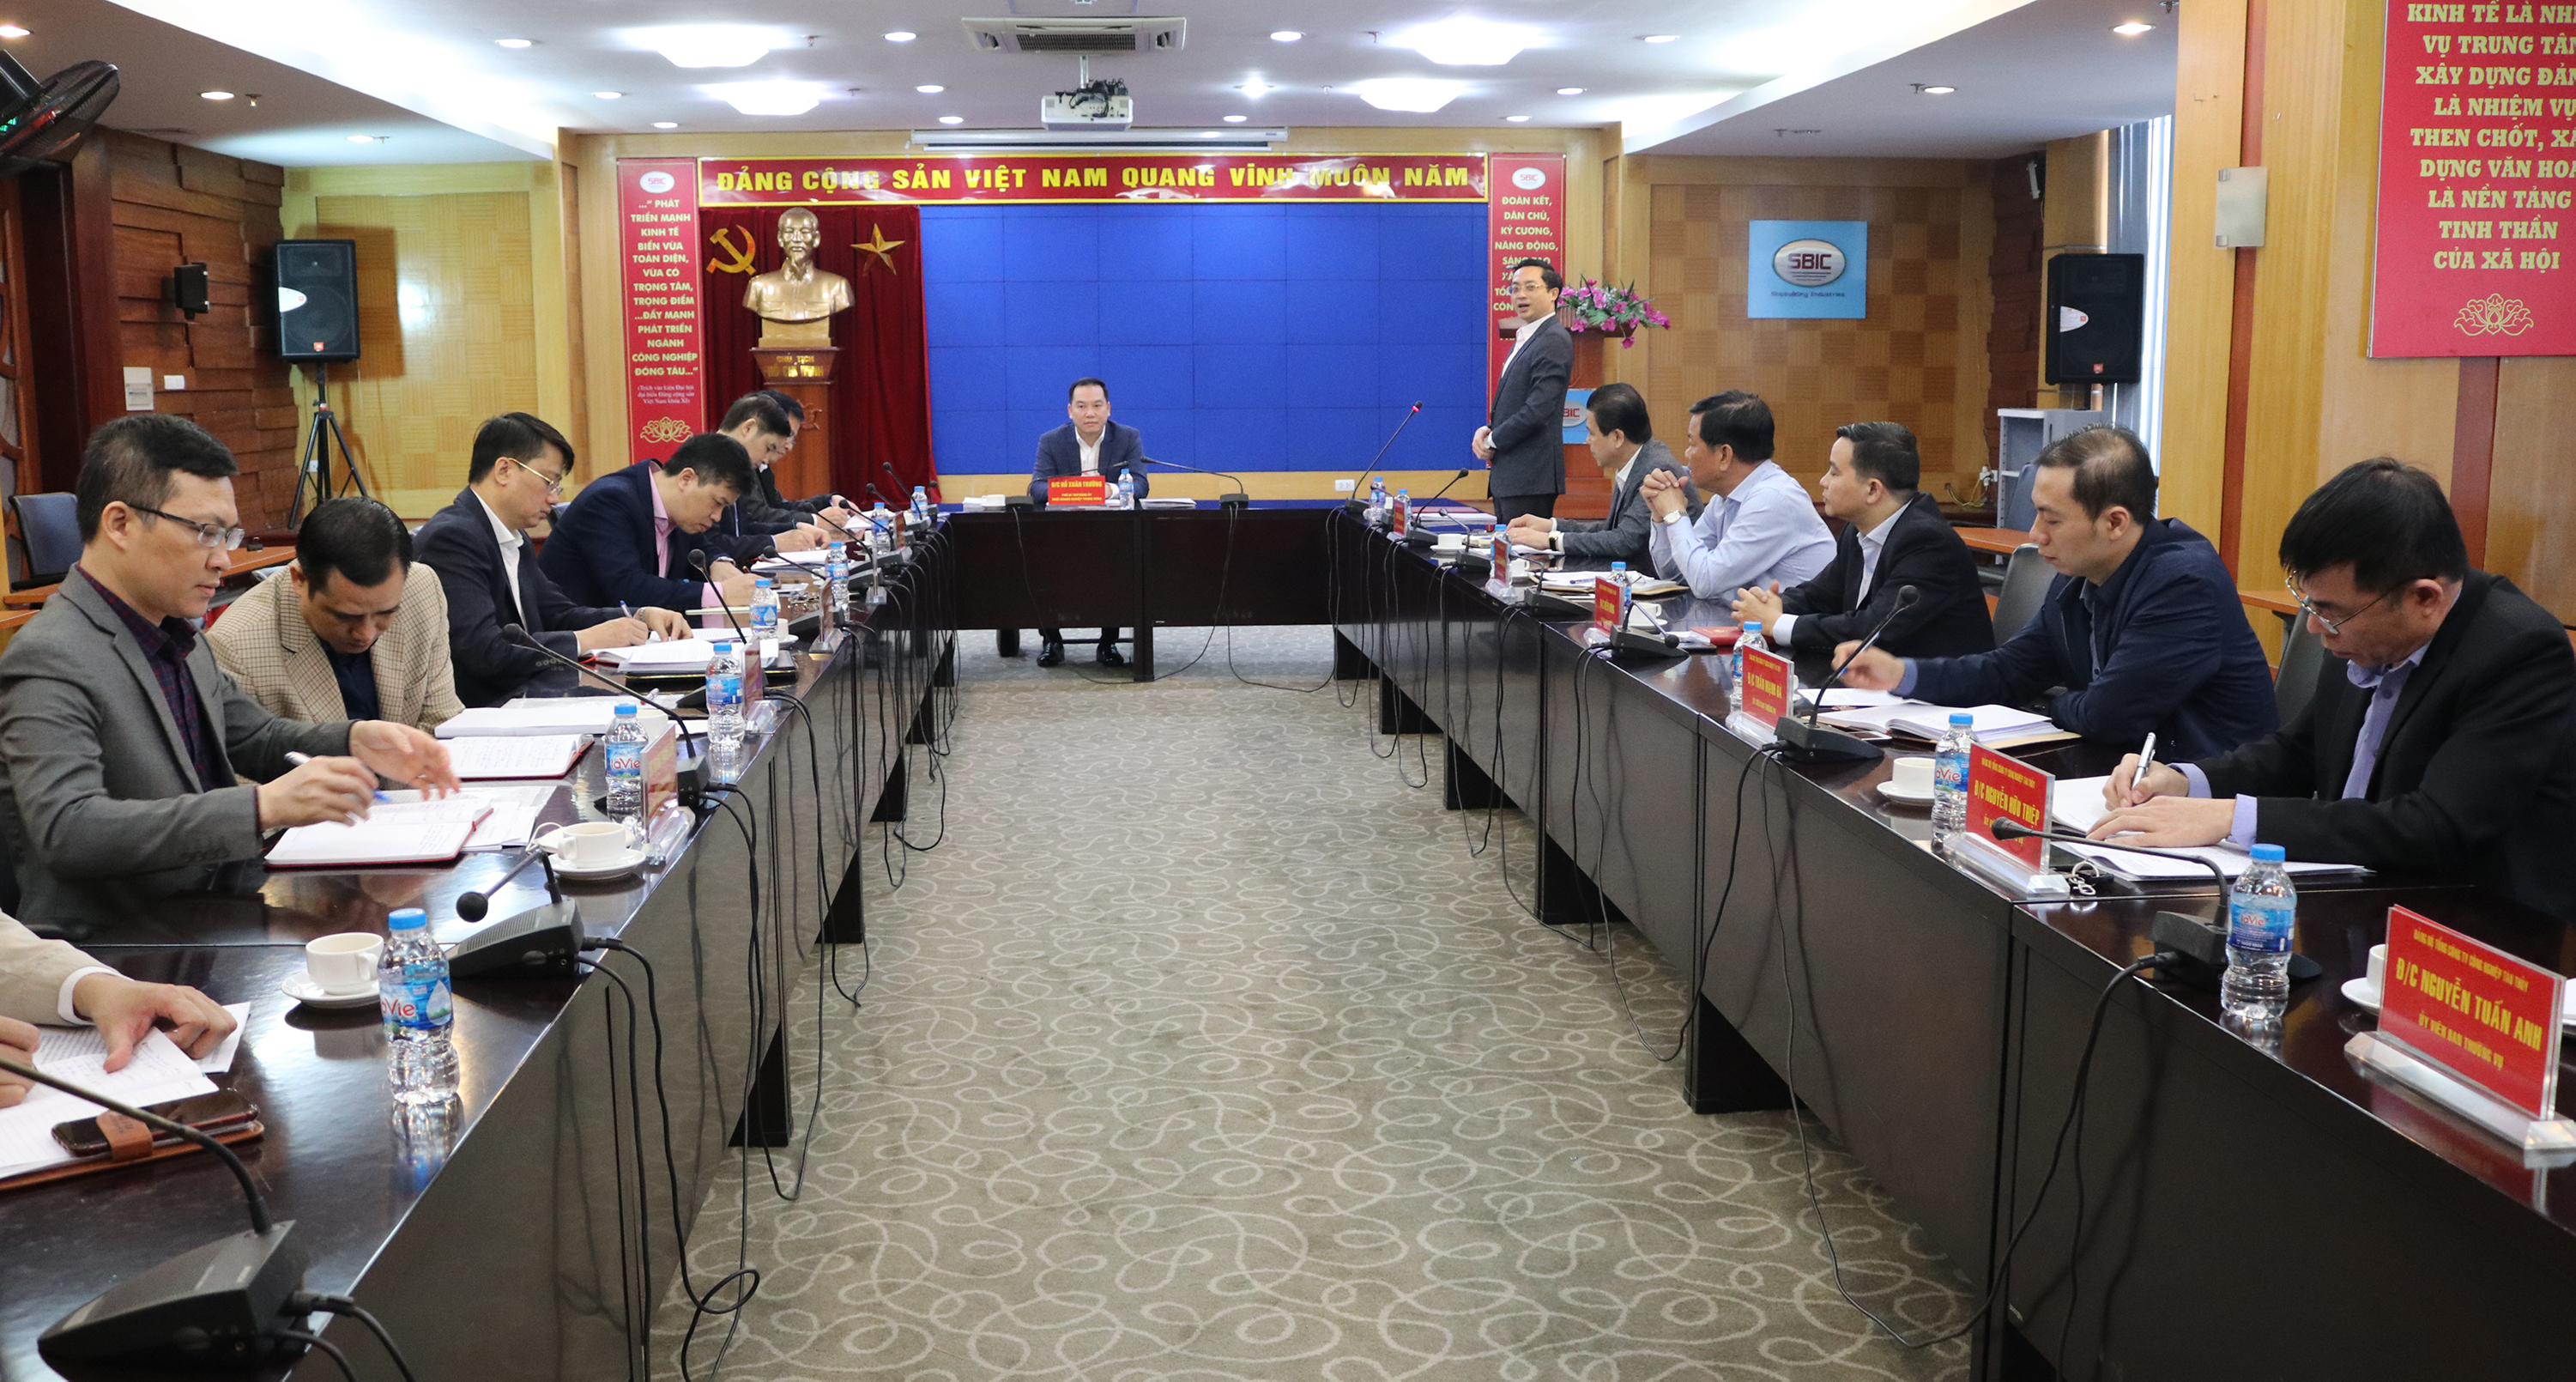 Đồng chí Vũ Anh Tuấn, Bí thư Đảng ủy, Chủ tịch HĐTV Tổng công ty Công nghiệp Tàu thủy báo cáo kết quả công tác 10 tháng đầu năm 2021.